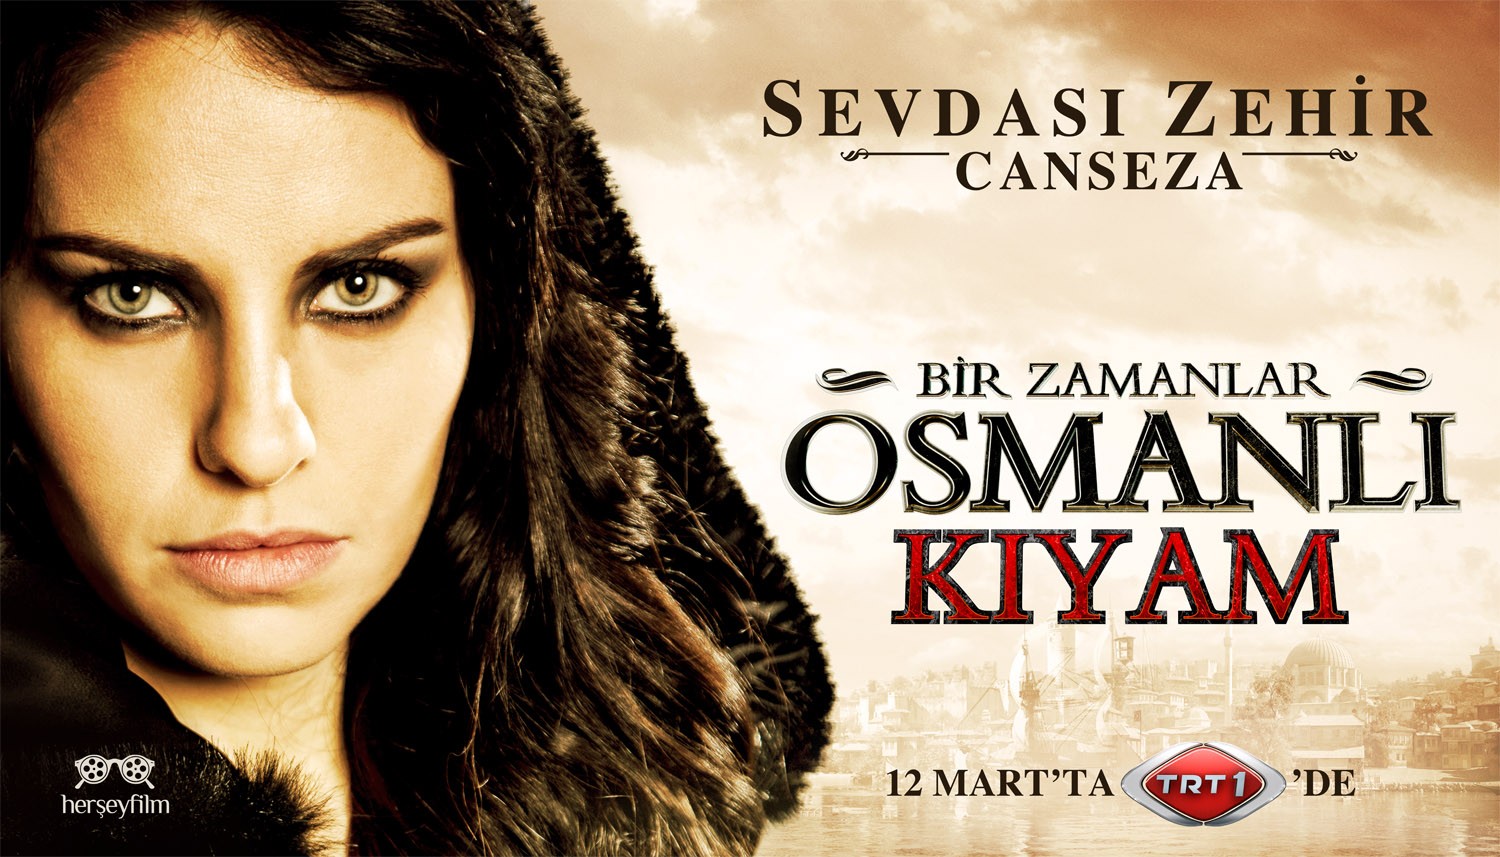 Extra Large TV Poster Image for Bir Zamanlar Osmanli Kiyam (#4 of 26)